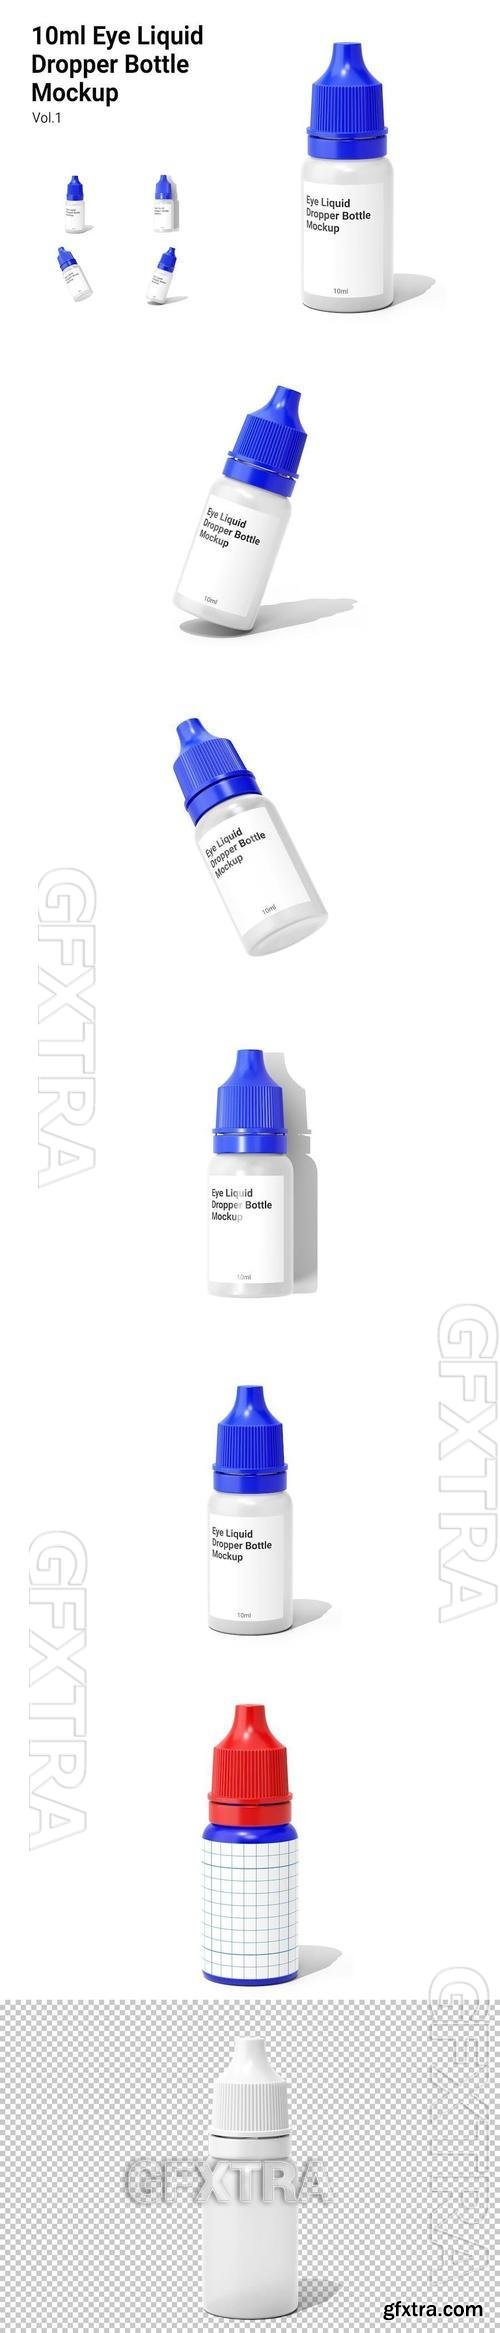 Eye Liquid Dropper Bottle Mockup Vol.1 GJ37C2W